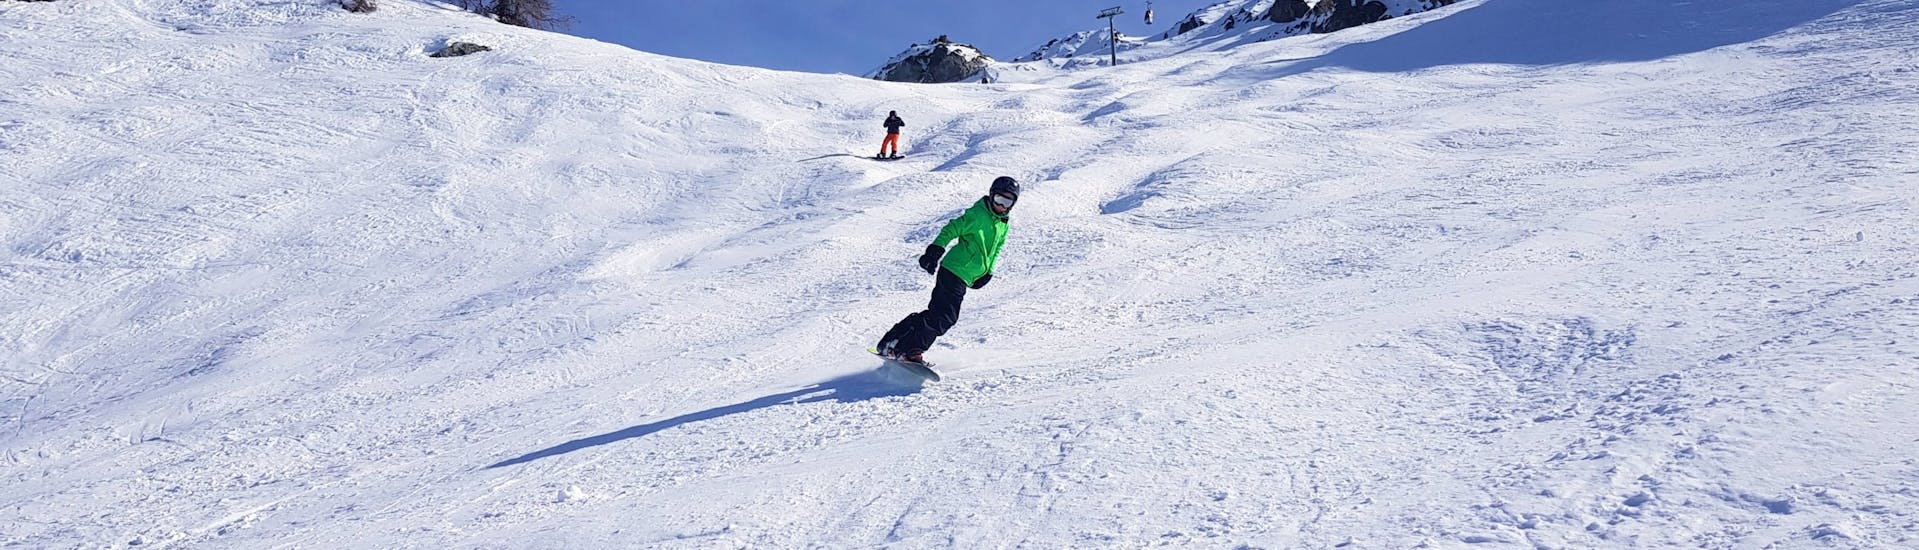 Lezioni private di Snowboard per tutti i livelli.